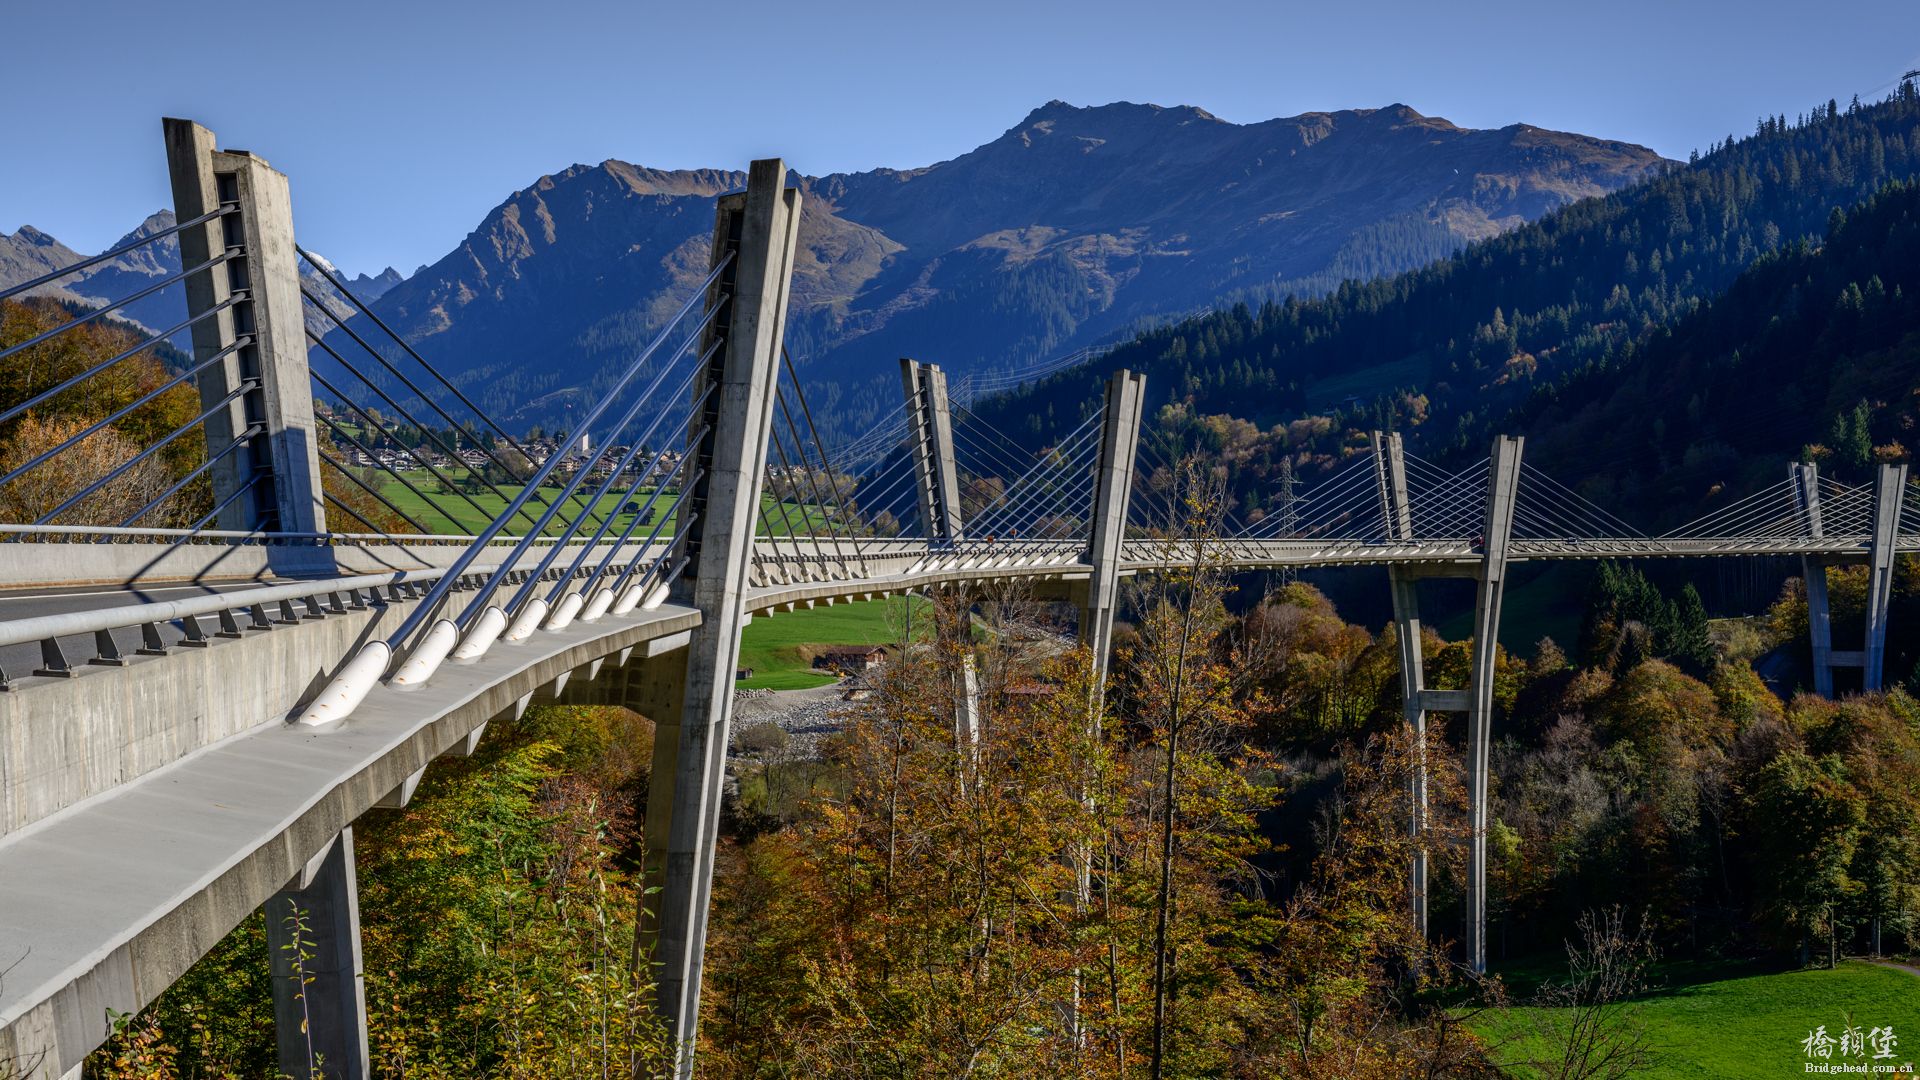 sunniberg-bridge-switzerland-switzerland_l.jpg